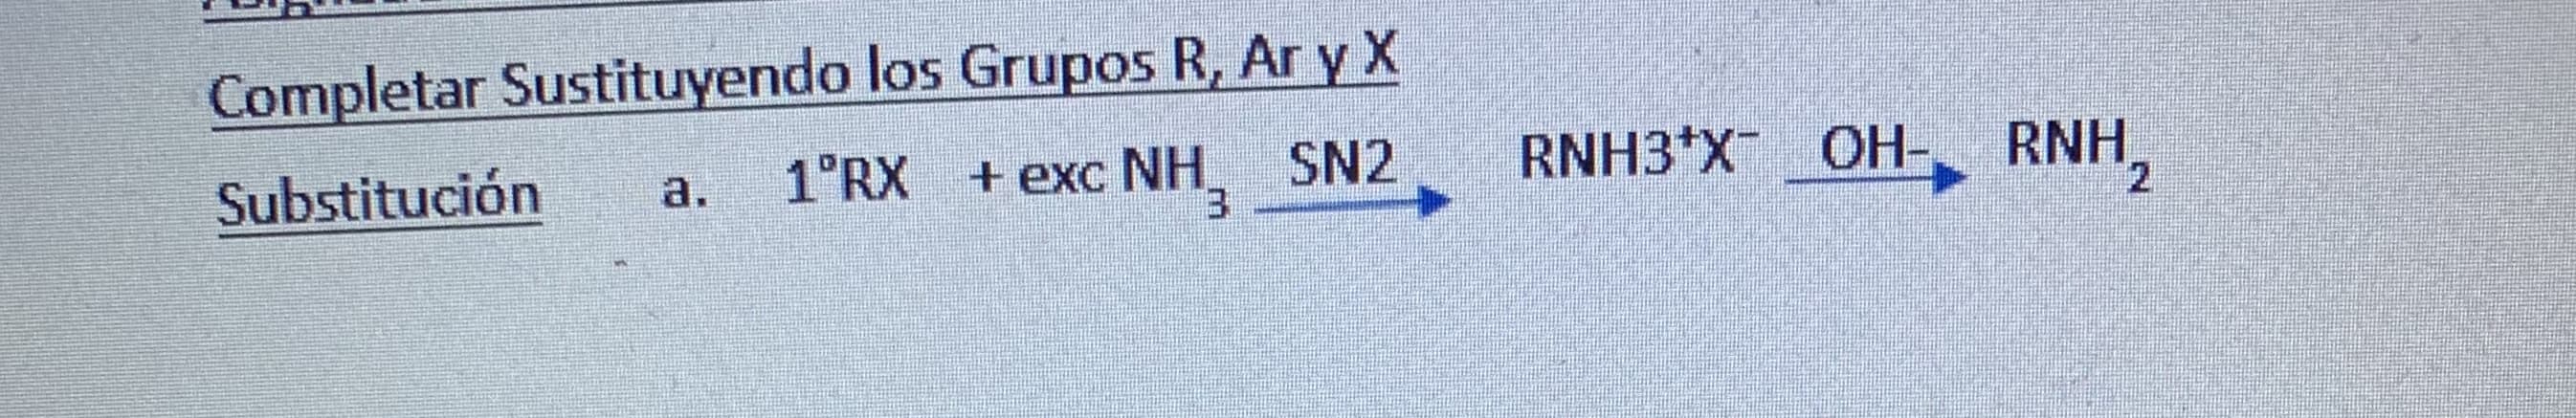 Completar Sustituyendo los Grupos R, Ar y X
Substitución
1°RX + exc NH, SN2
3.
RNH3*X OH-, RNH,
a.
